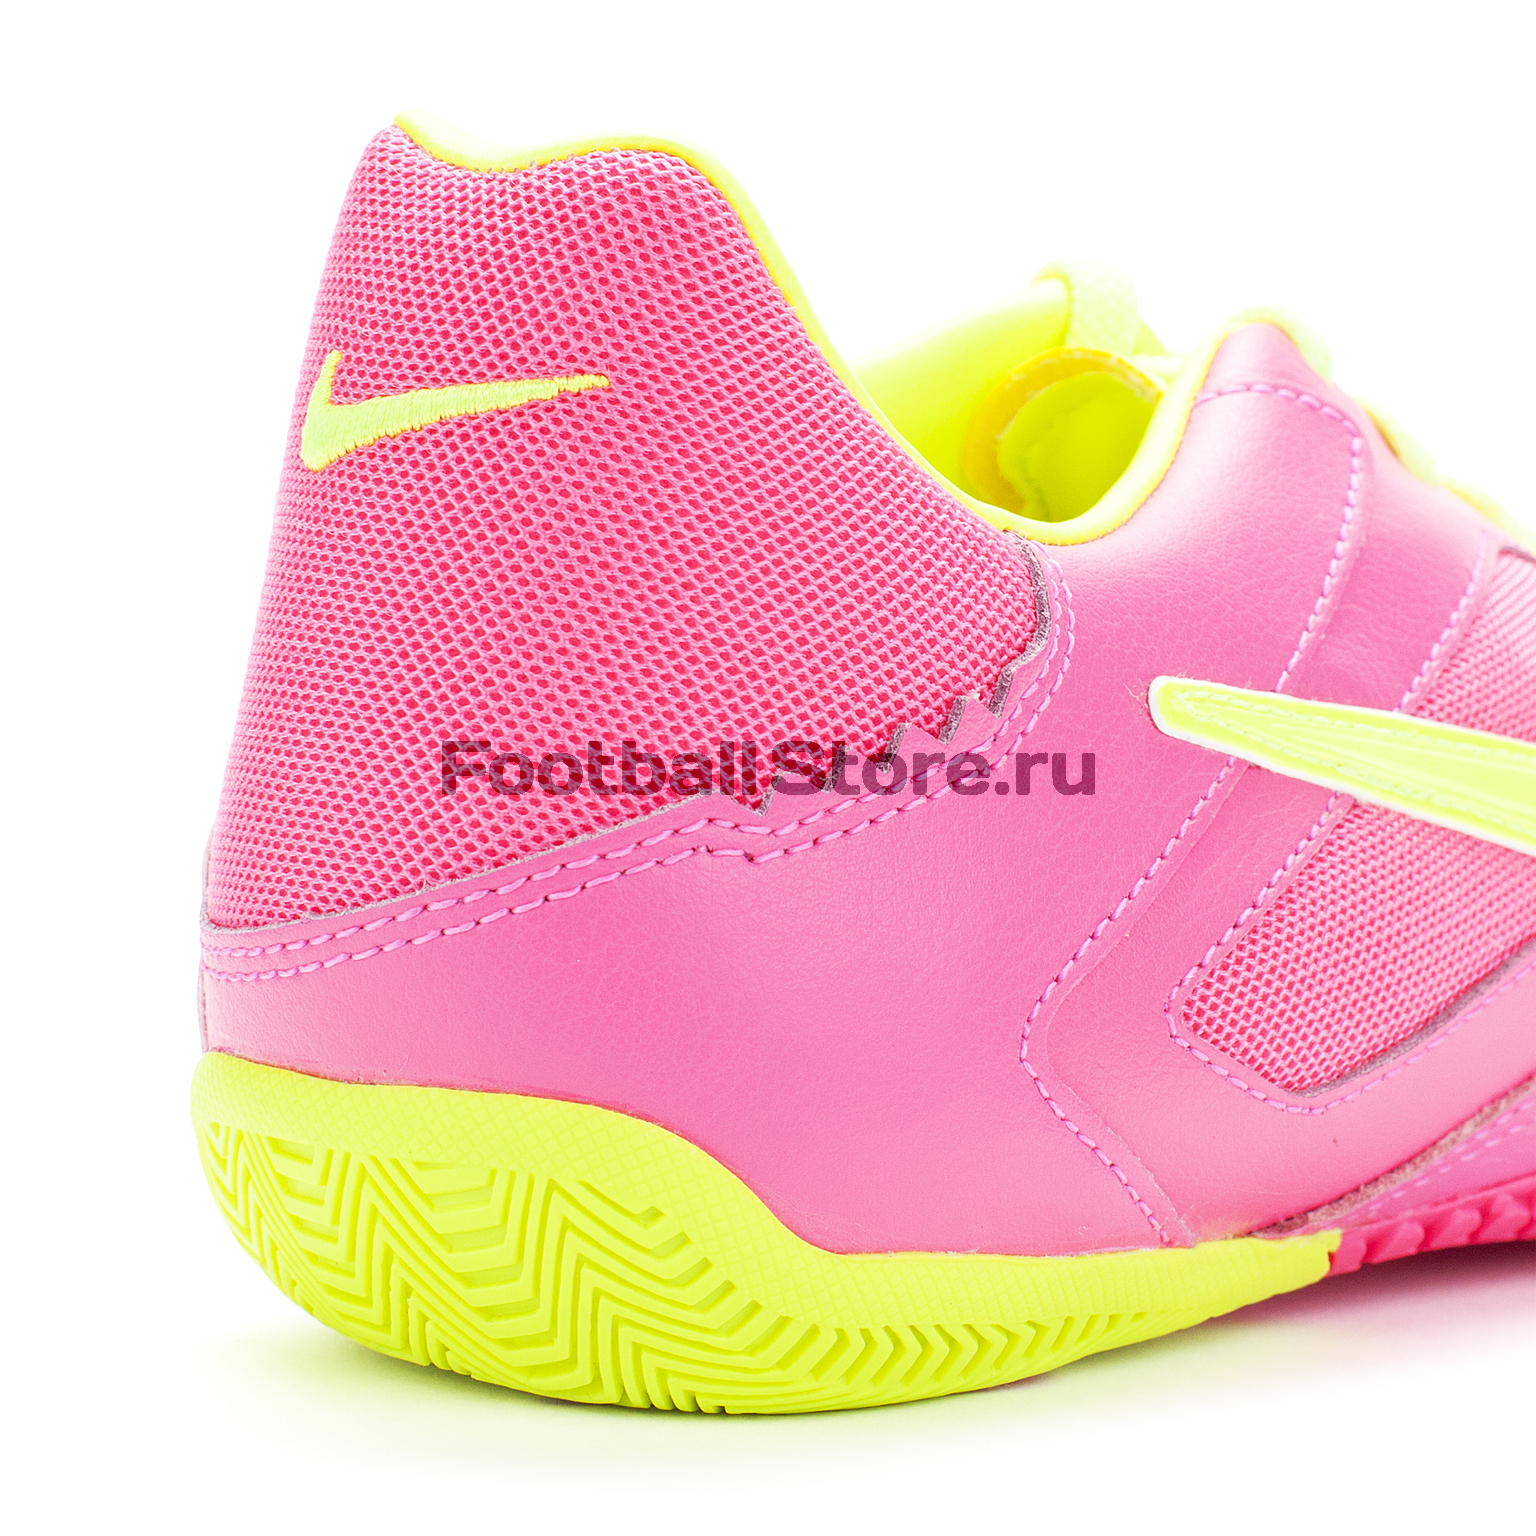 Обувь для зала Nike 5 Elastico Pro 415121-676